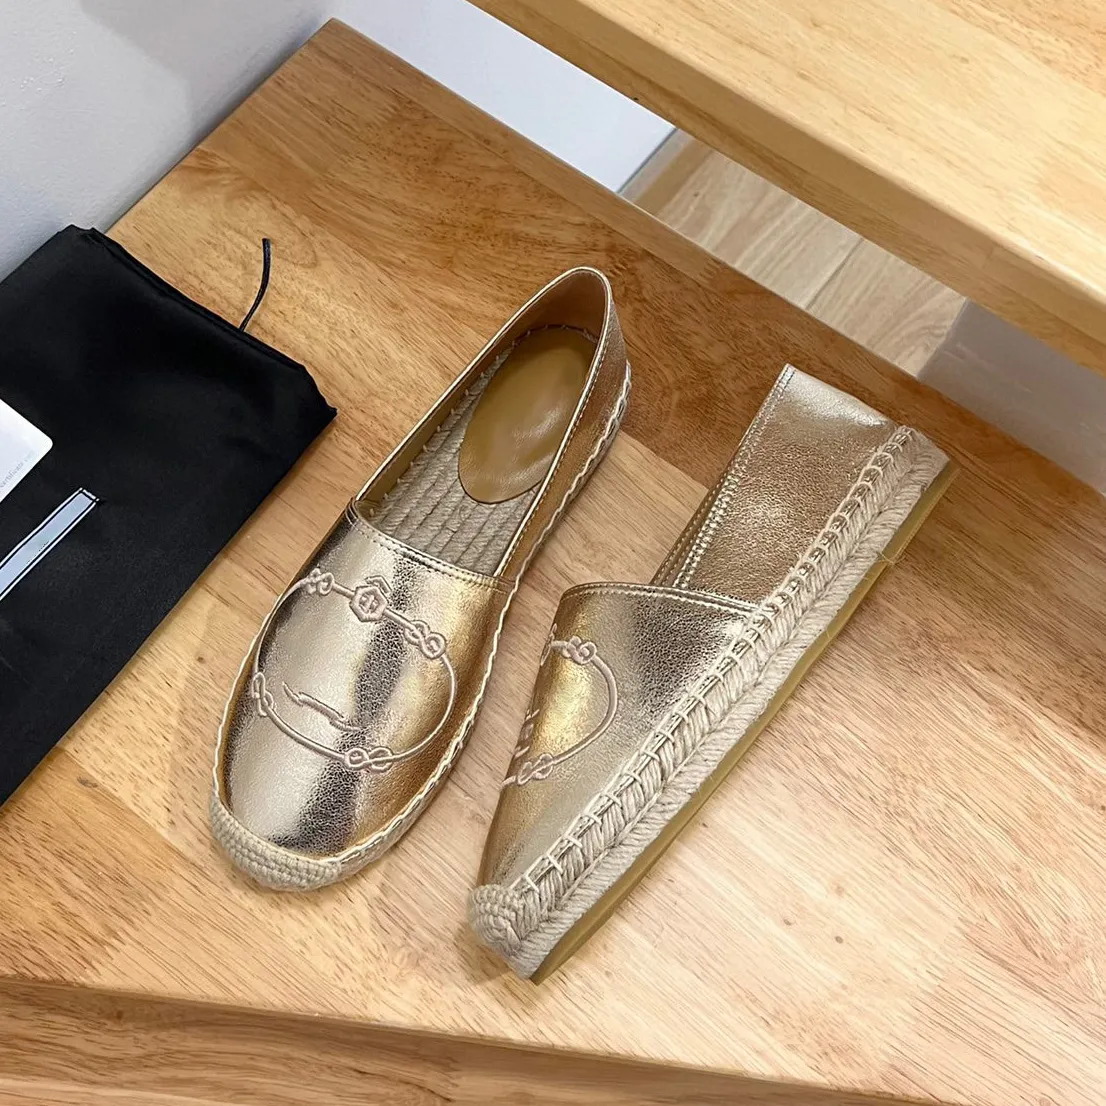 Кожаные льняные слипоны с вышитыми надписями на эспадрильях JUTE Sole весенние туфли на плоской подошве мокасины ручной работы роскошная дизайнерская обувь для женщин повседневная роскошная фабричная обувь